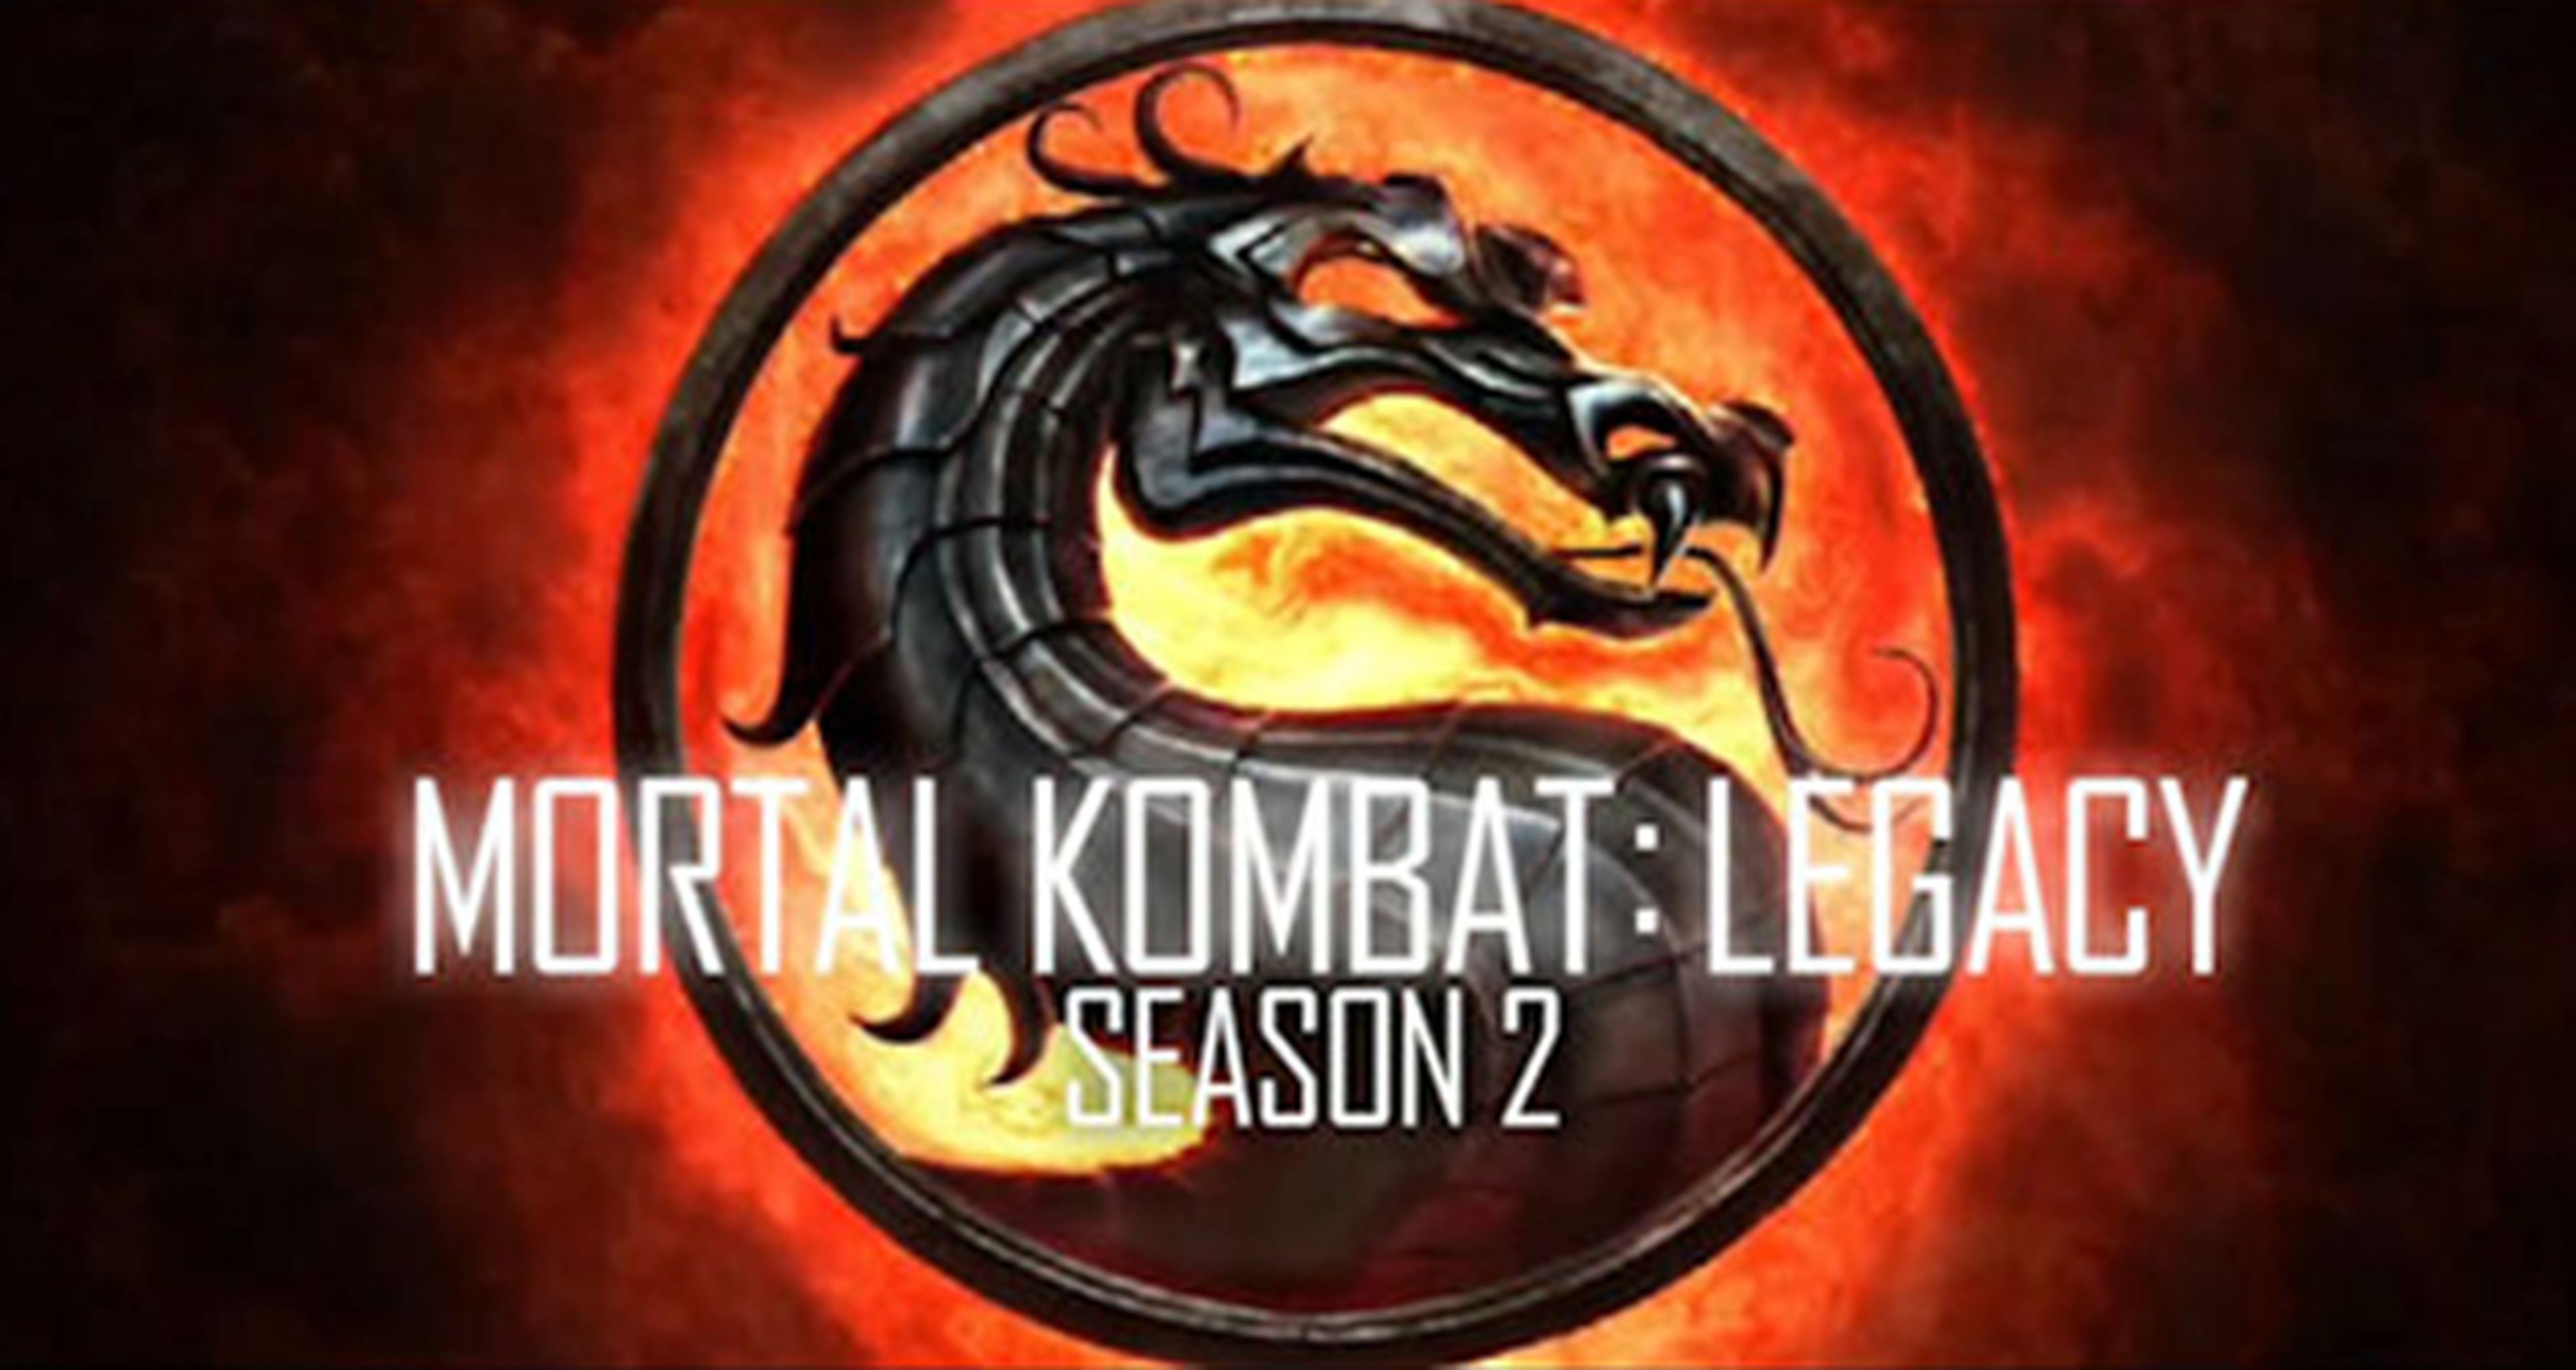 Publicada la 2ª temporada de Mortal Kombat Legacy